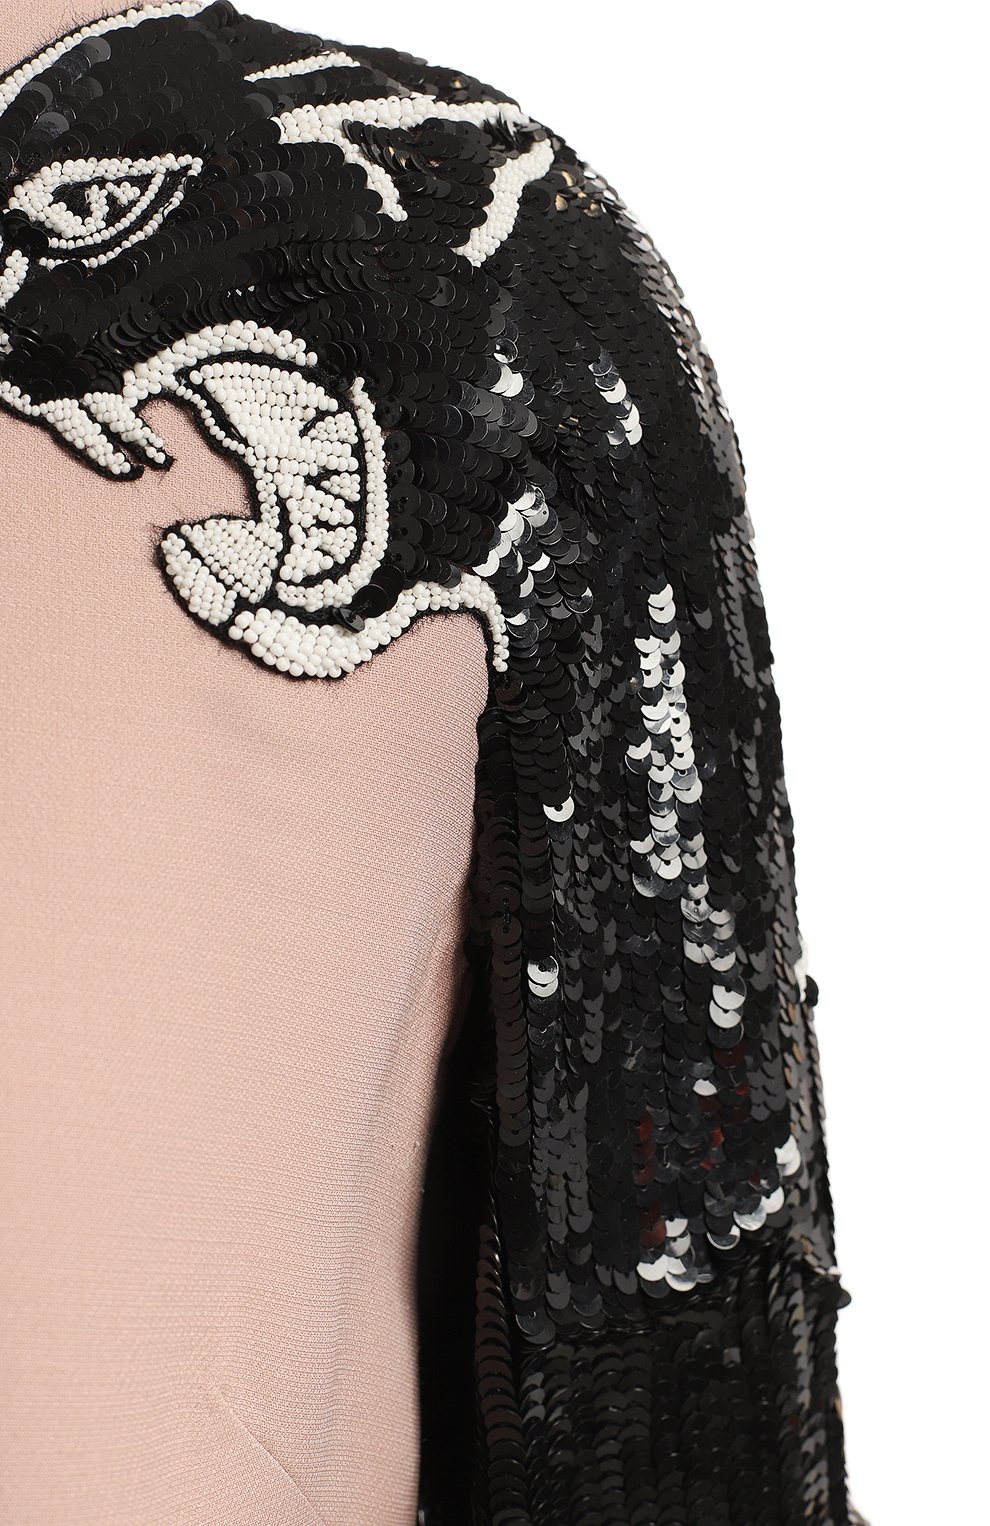 Платье из шерсти и шелка | Valentino | Розовый - 3